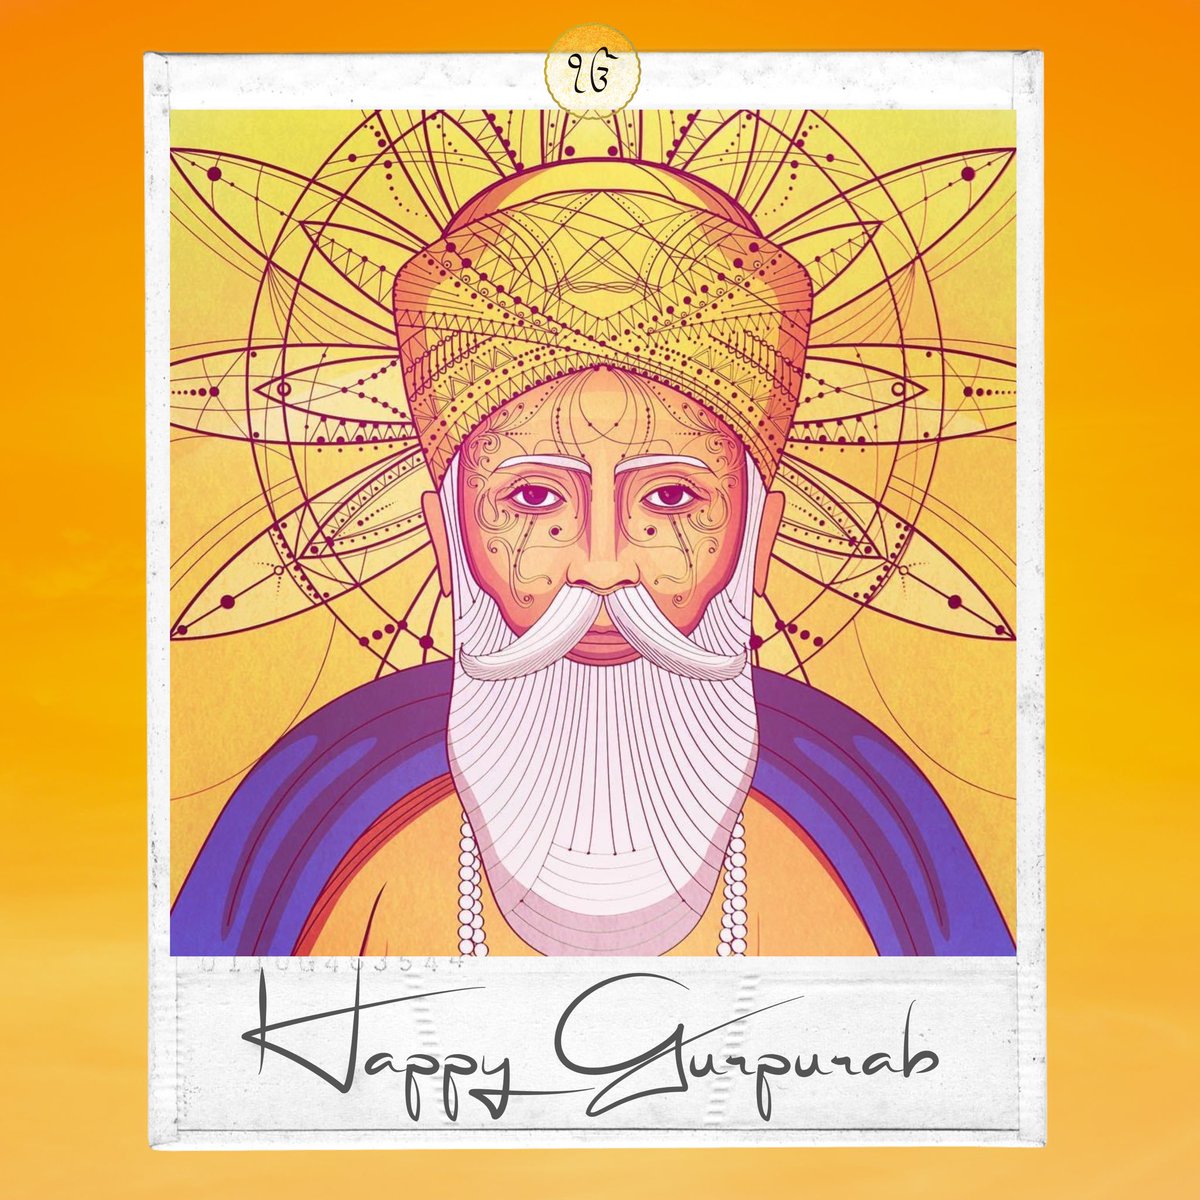 Happy Gurpurab. Peace and prosperity to all.. #GuruNanakDevJi #GuruNanak #HappyGurpurab #HappyGurupurab